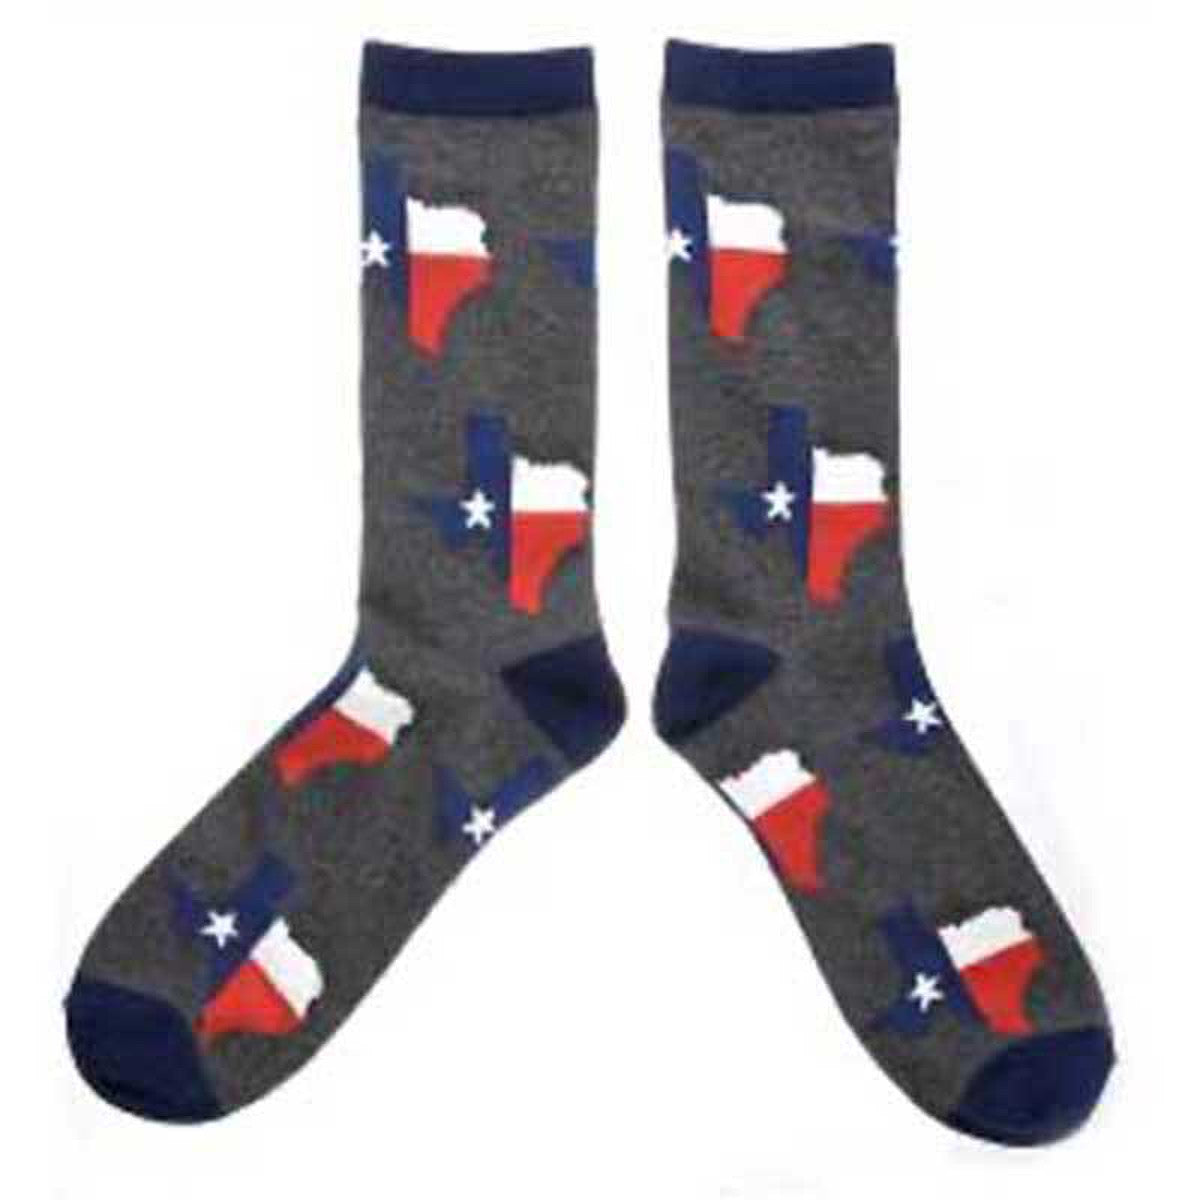 Robin Ruth - Gray Texas Shaped Socks